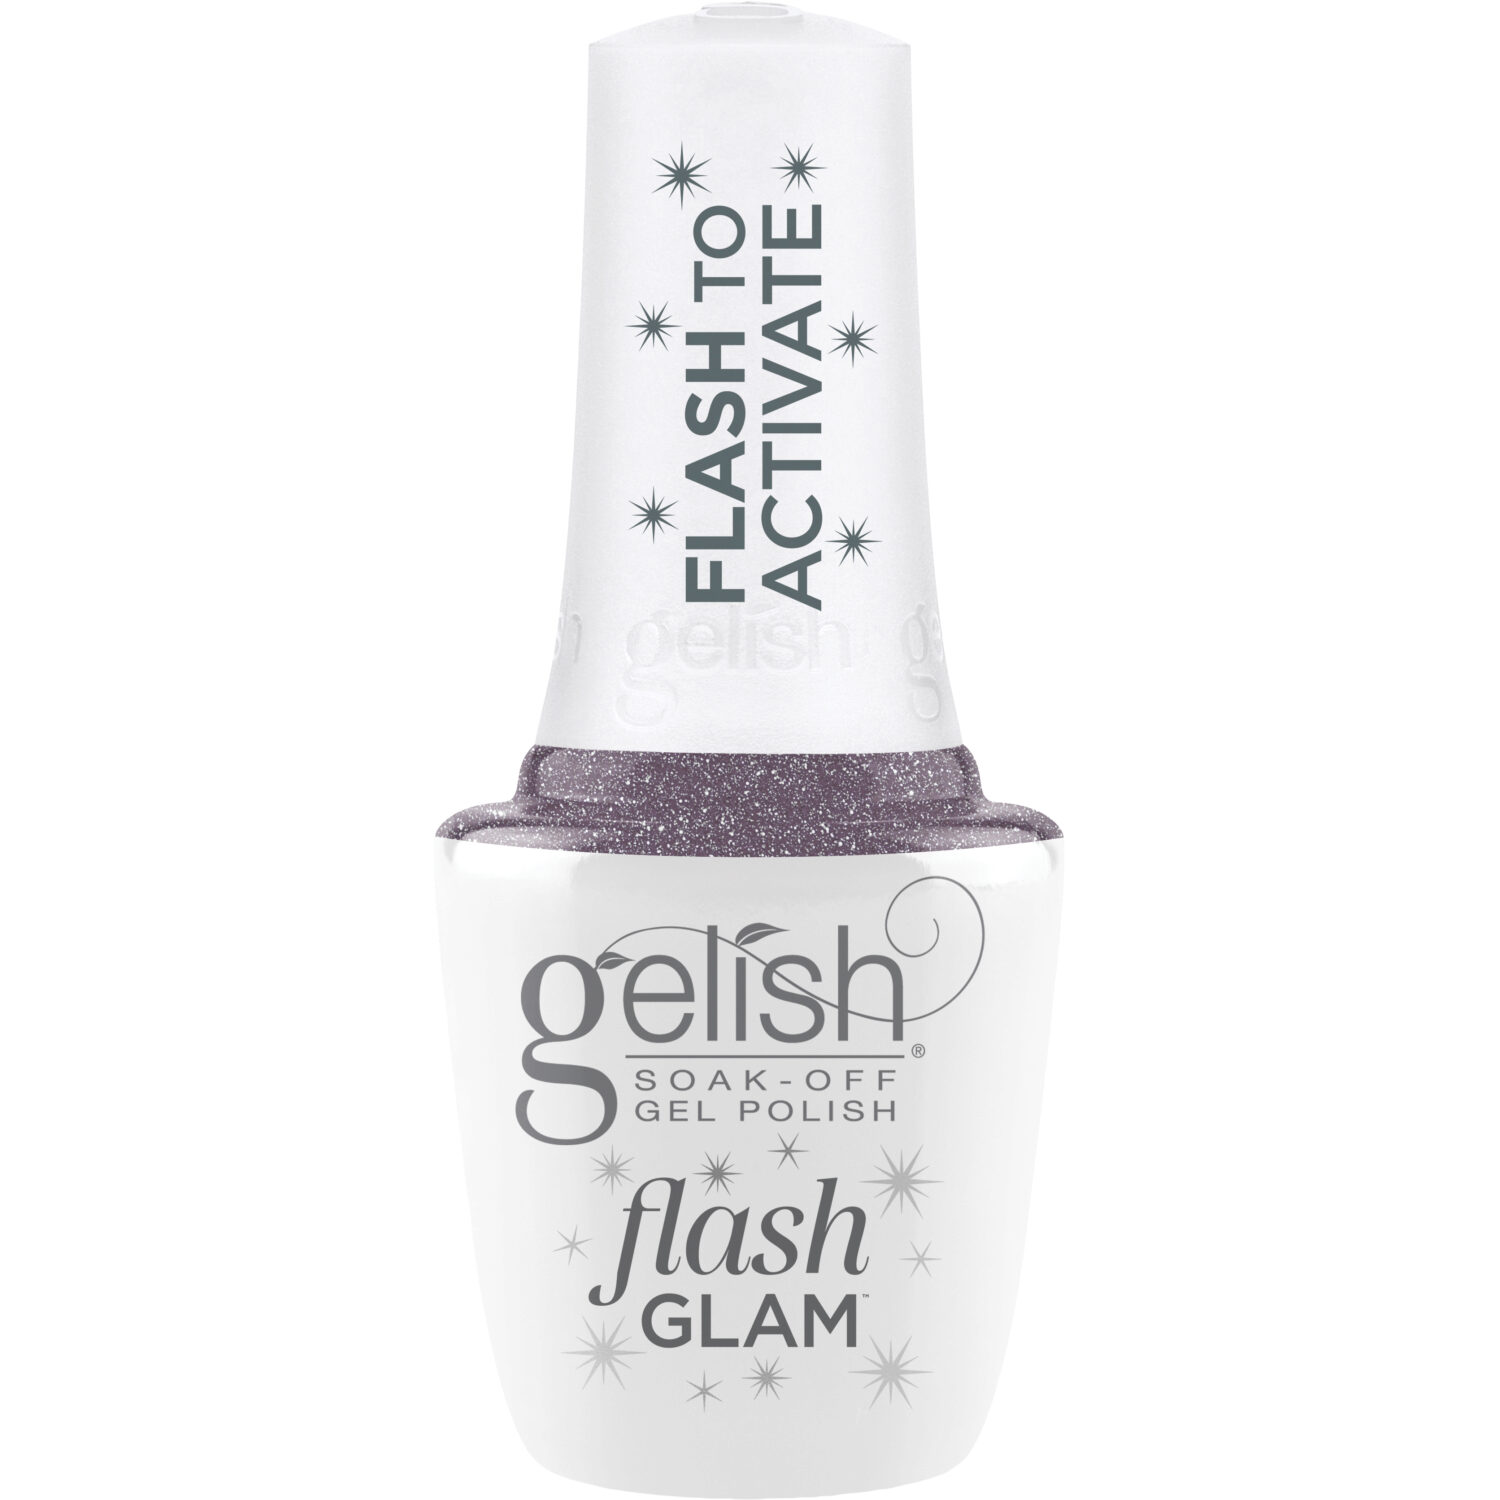 Gelish Flash Glam Time To Sparkle Glitter Gel Polish, 0.5 fl oz.